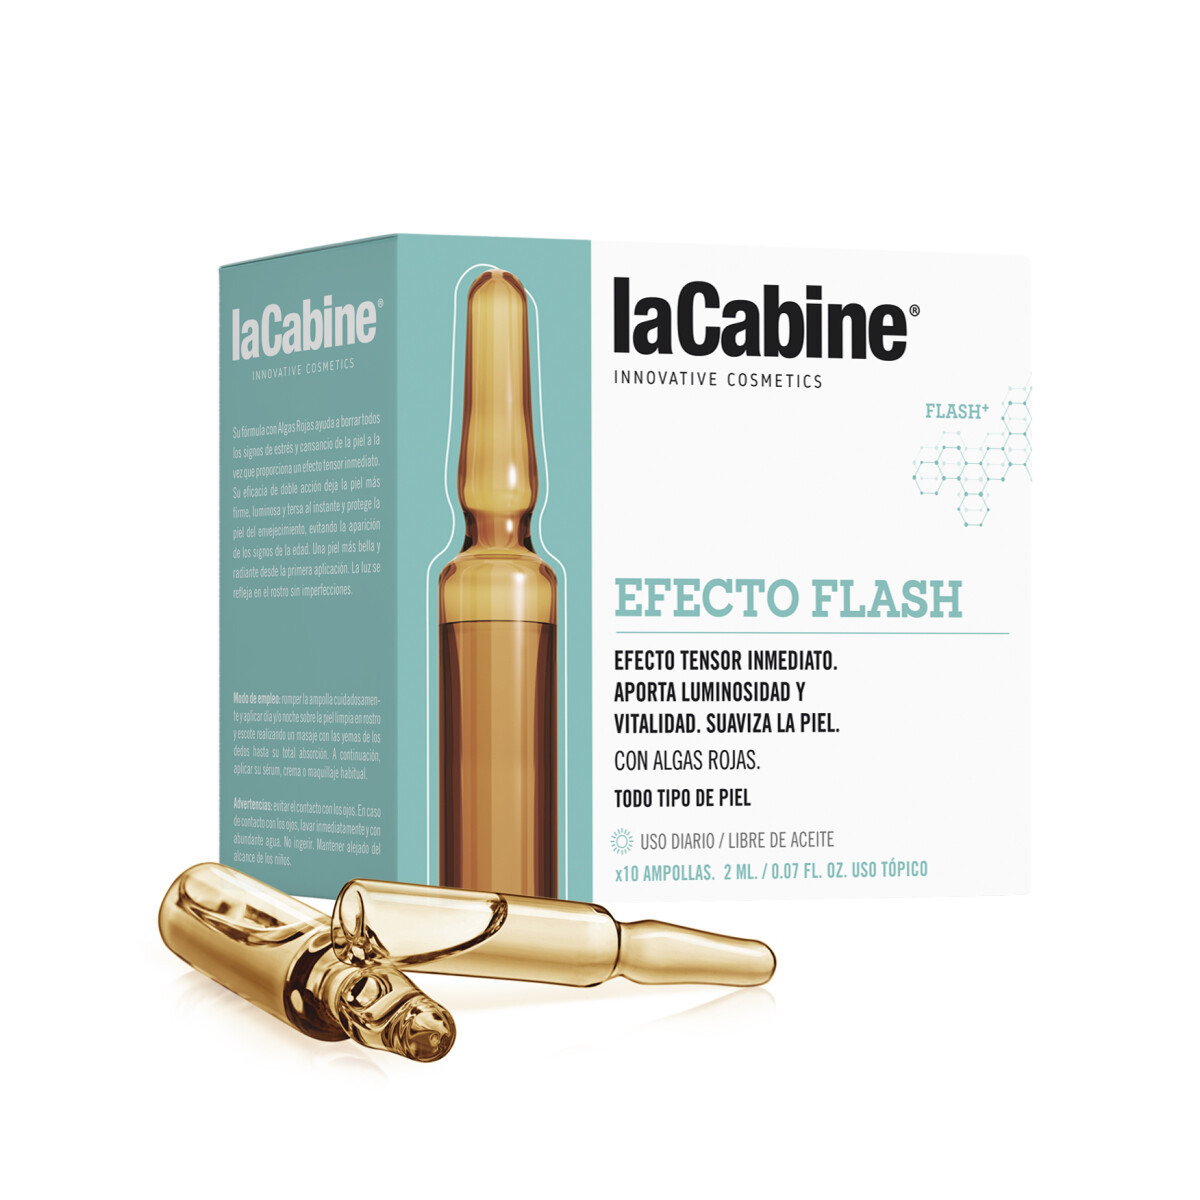 La Cabine EFECTO FLASH 10 x 2ml - 2mlx10 